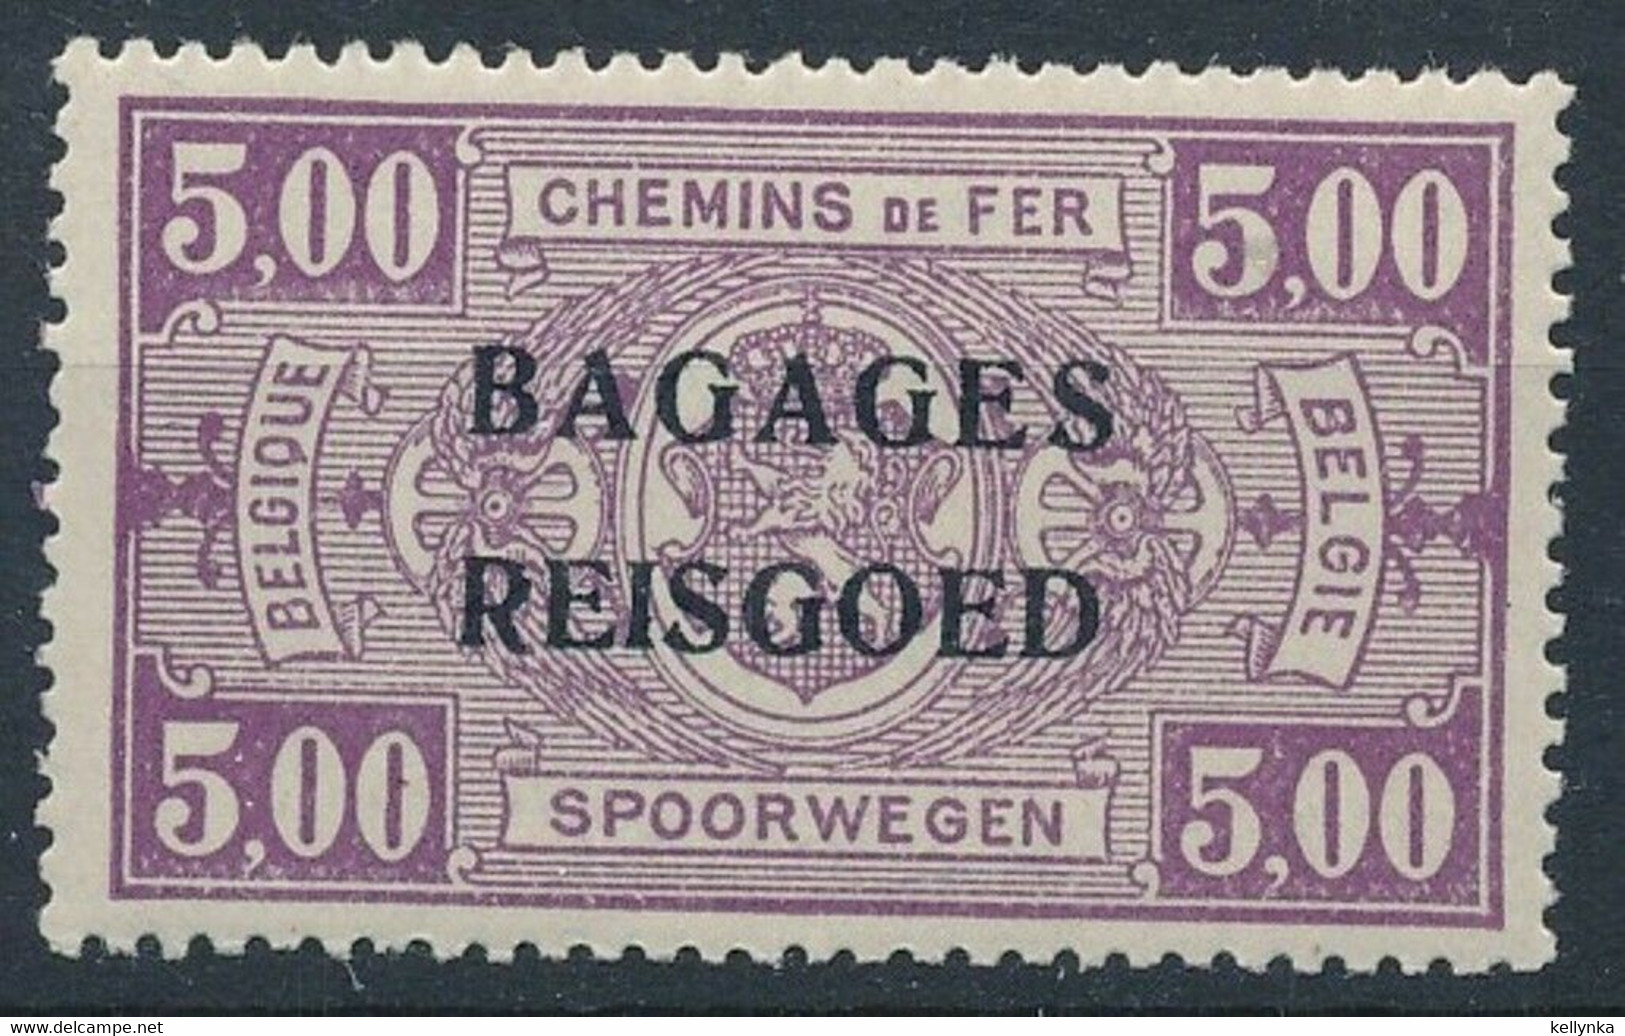 Belgique - Belgie - BA14 - Bagages - Reisgoed - 1935 - MNH - Reisgoedzegels [BA]